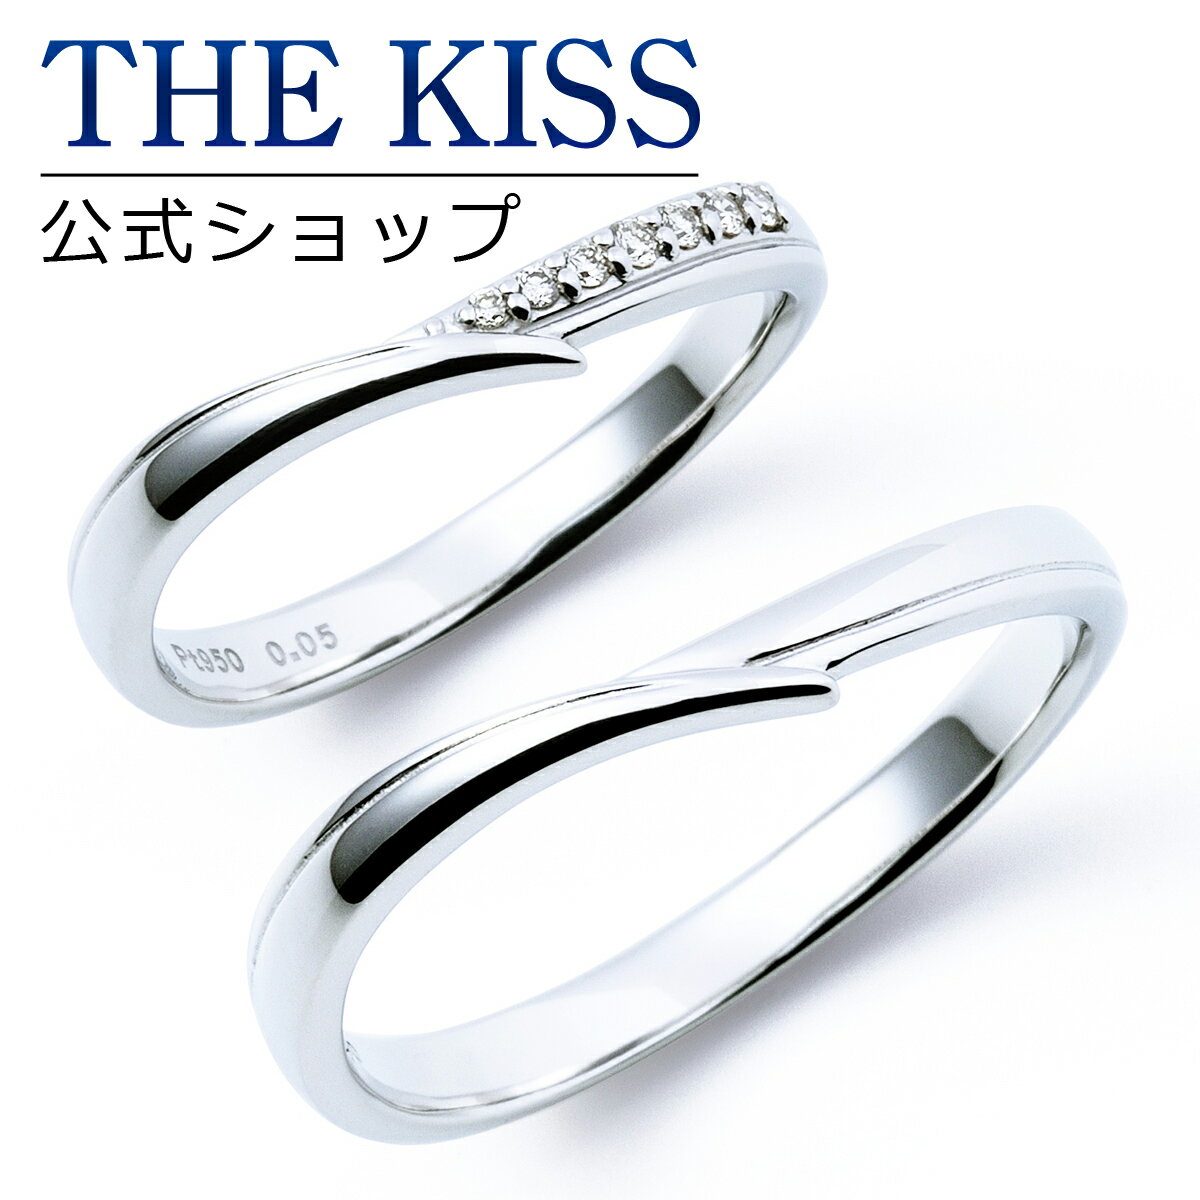 【ラッピング無料】【刻印無料】【THE KISS Anniversary】 プラチナ マリッジ リング 結婚指輪 ペアリング THE KISS ザキッス リング・指輪 7061122141-7061122142 セット シンプル 男性 女性 2個セット 母の日